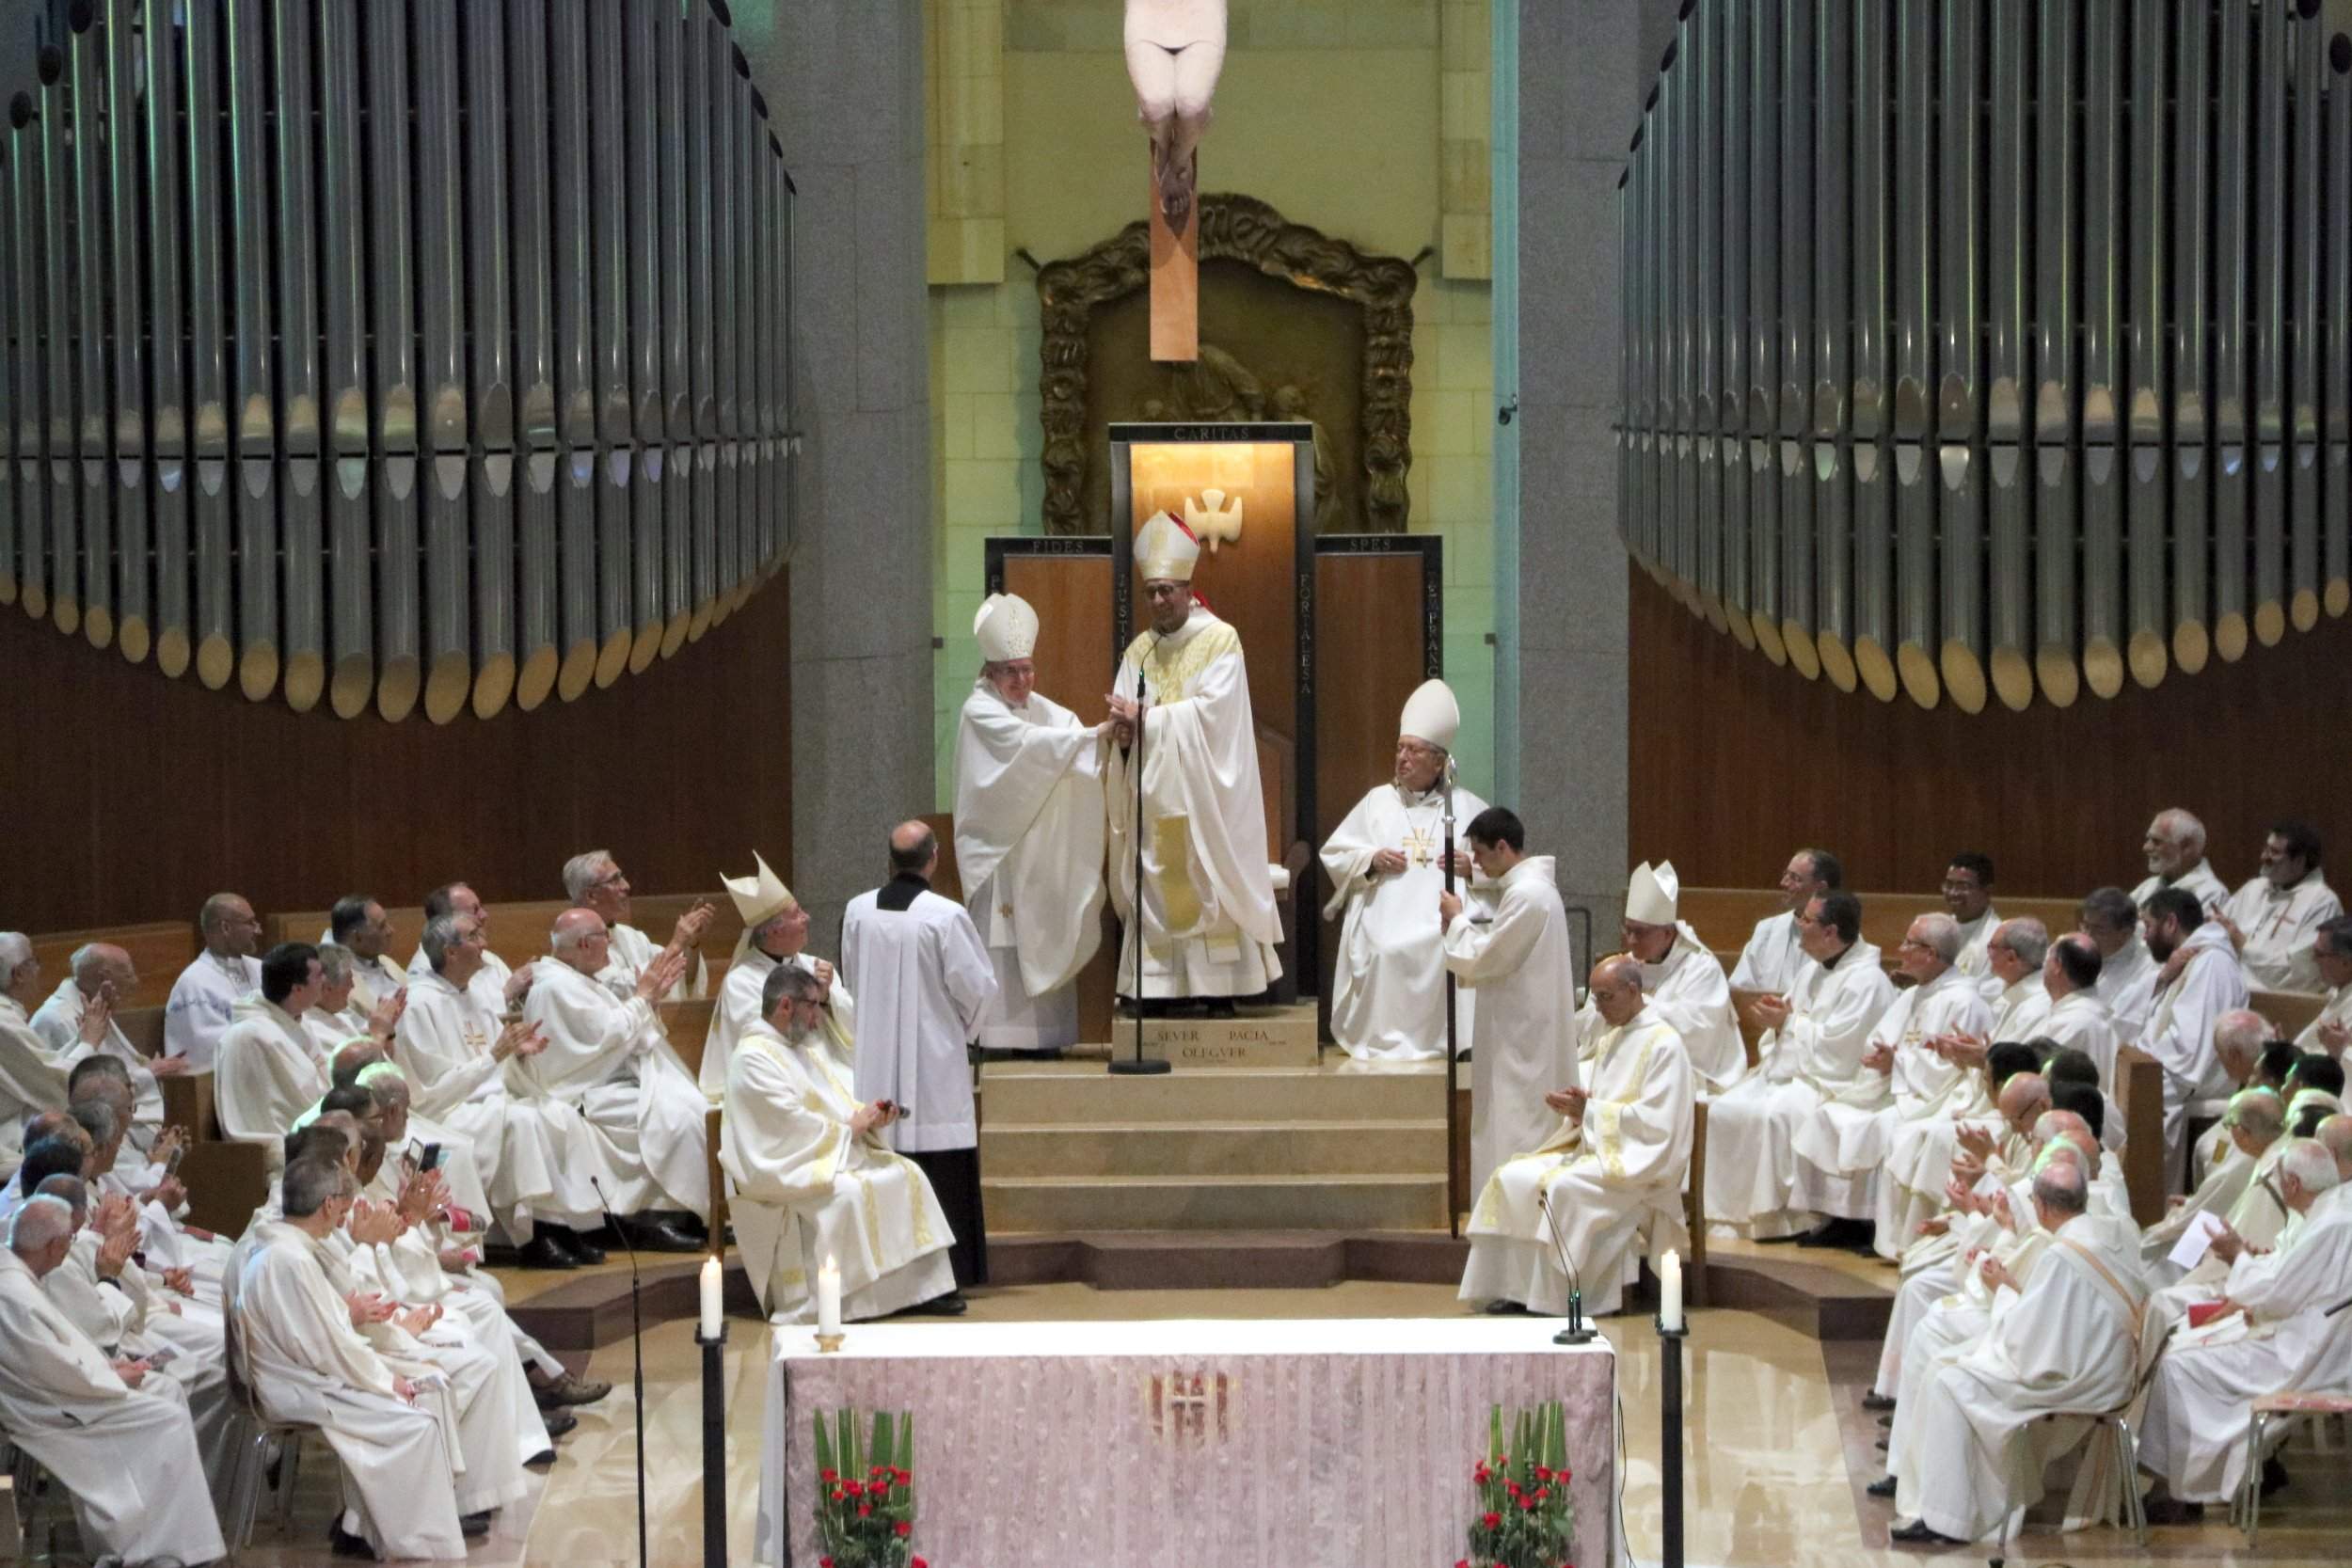 Omella destaca la missió de "dignitat" i "servei" que assumeix com a cardenal